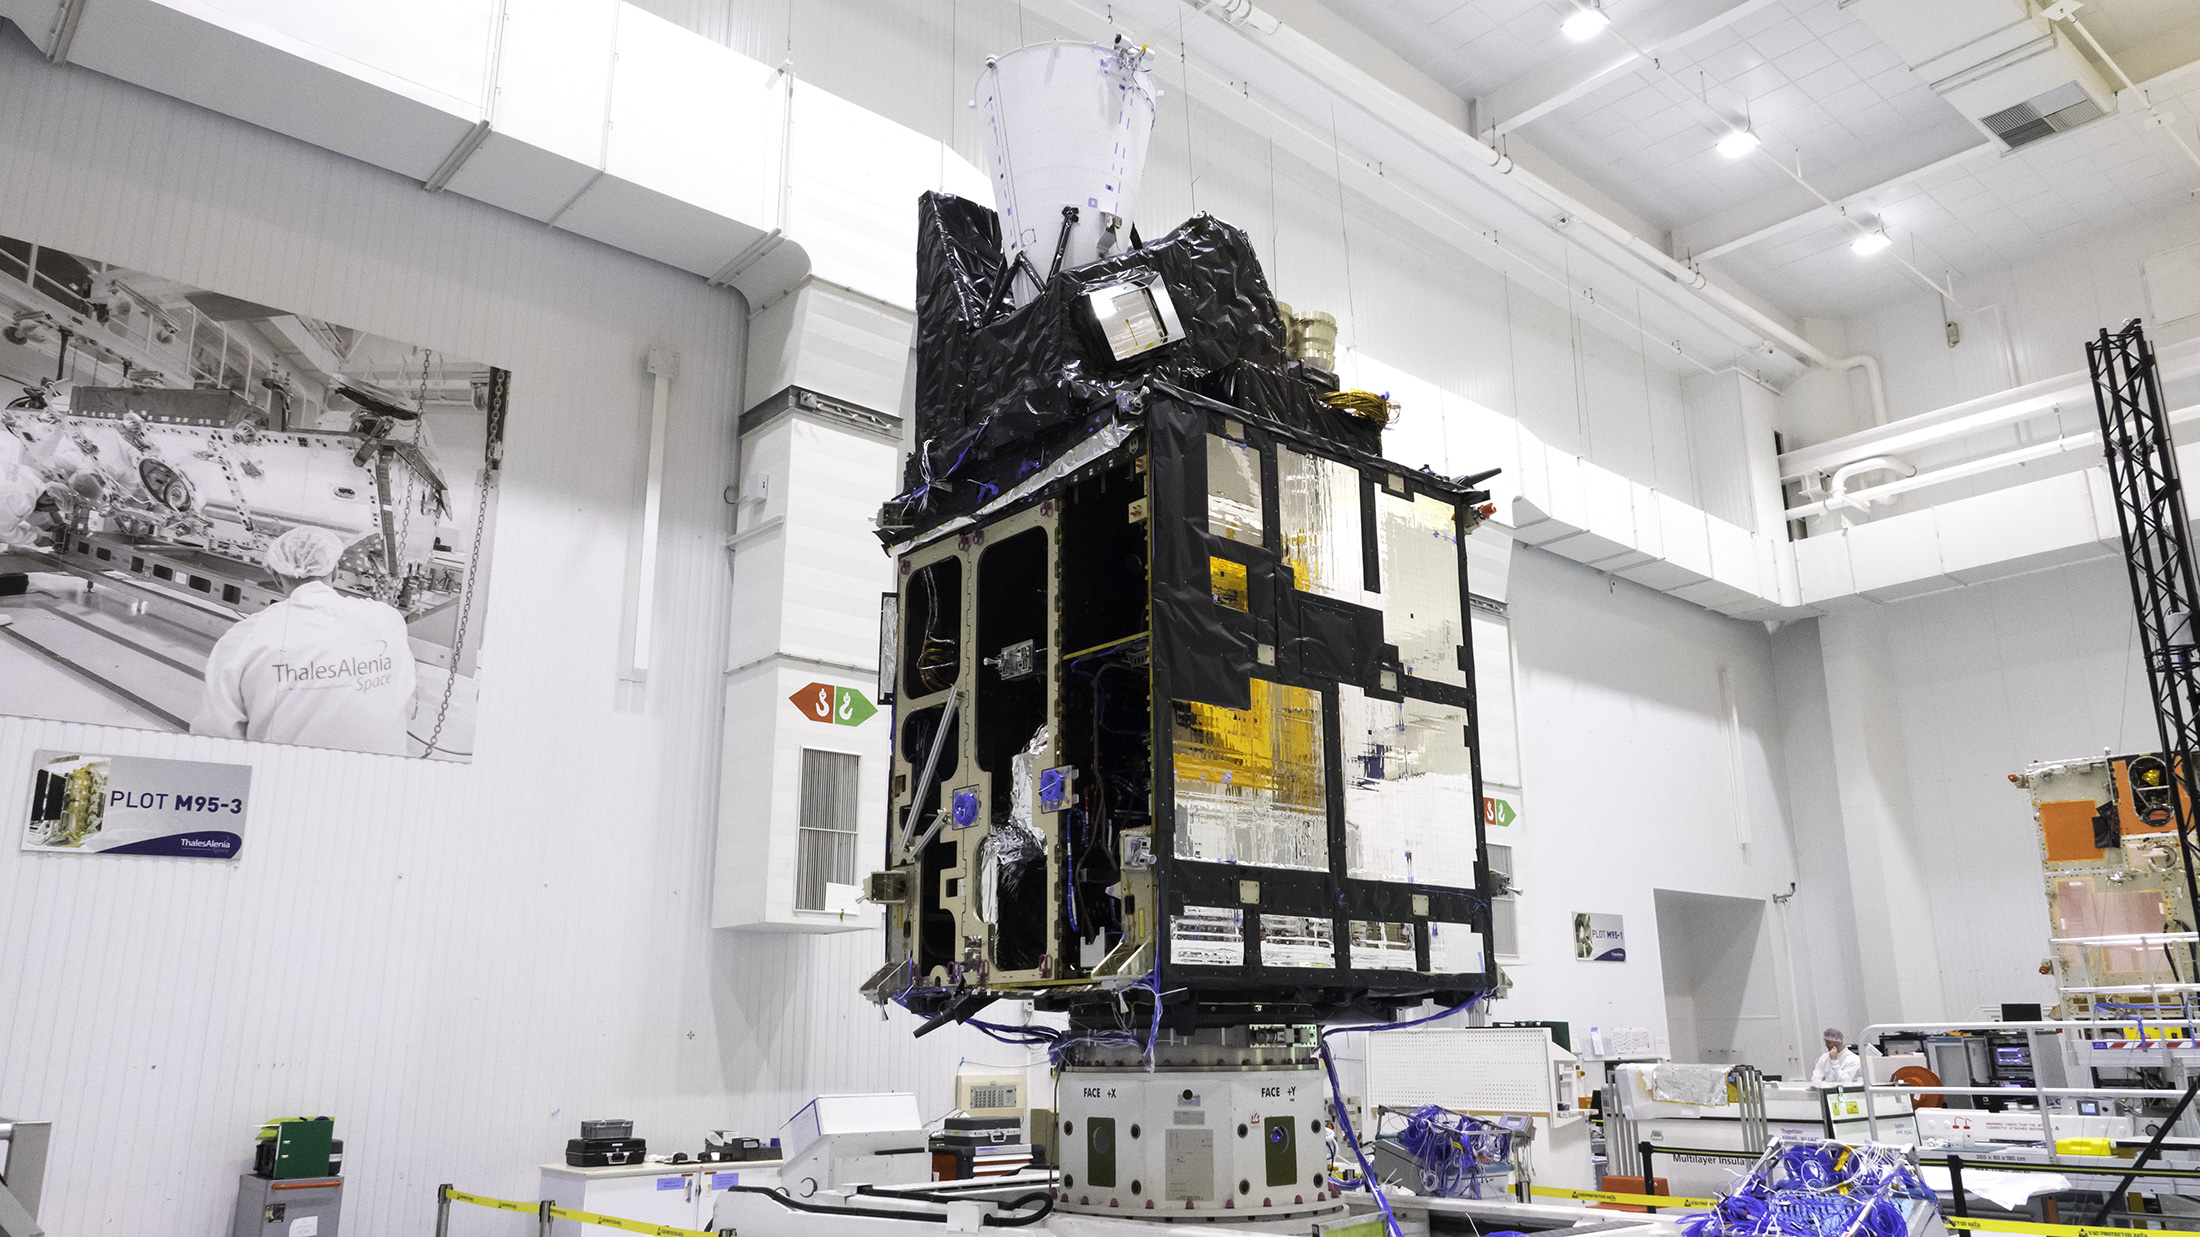 Le modèle structurel du satellite imageur (MTG-I) de Météosat de troisième génération. Il est ici vu en cours d'intégration dans l'usine cannoise de Thales Alenia Space (juin 2019). © Rémy Decourt